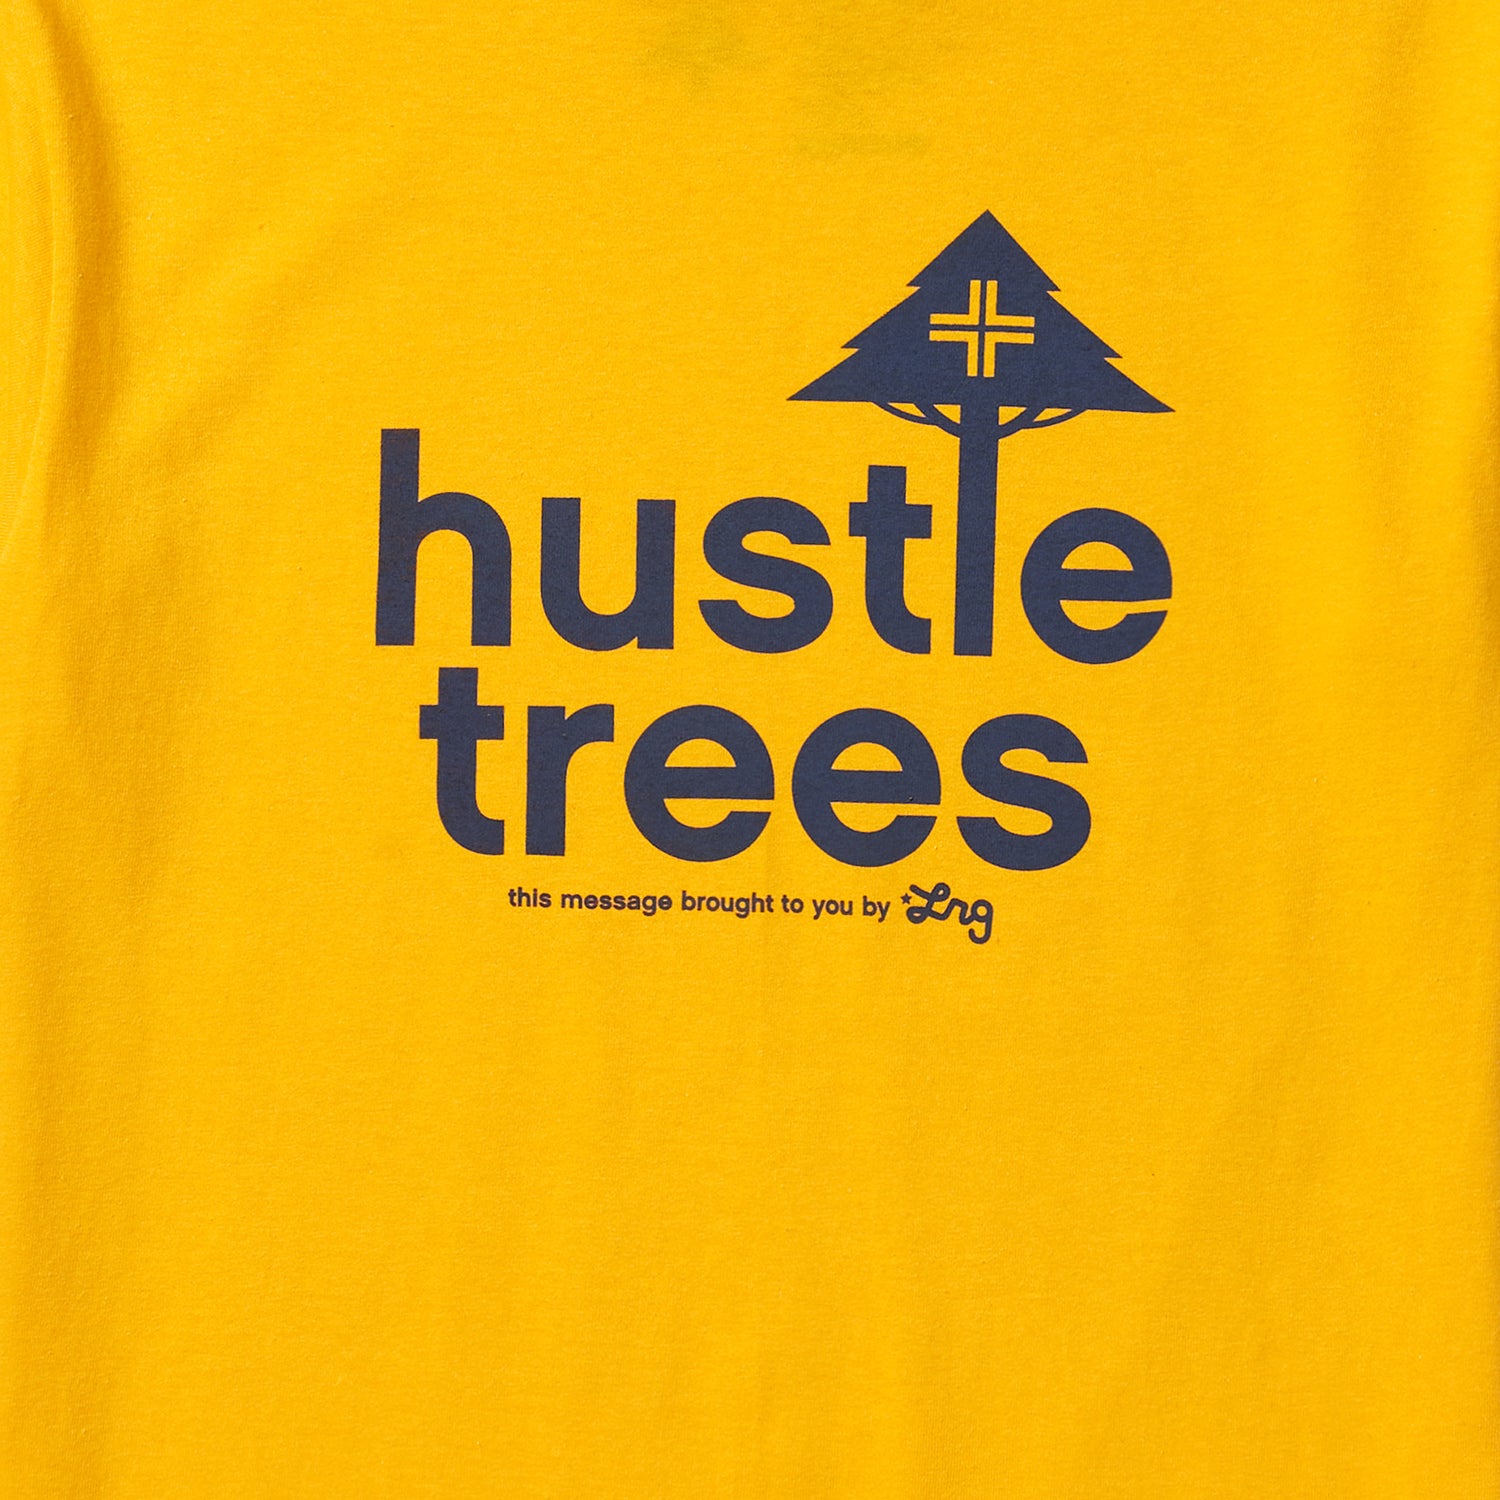 HUSTLE TREES TEE - GOLD